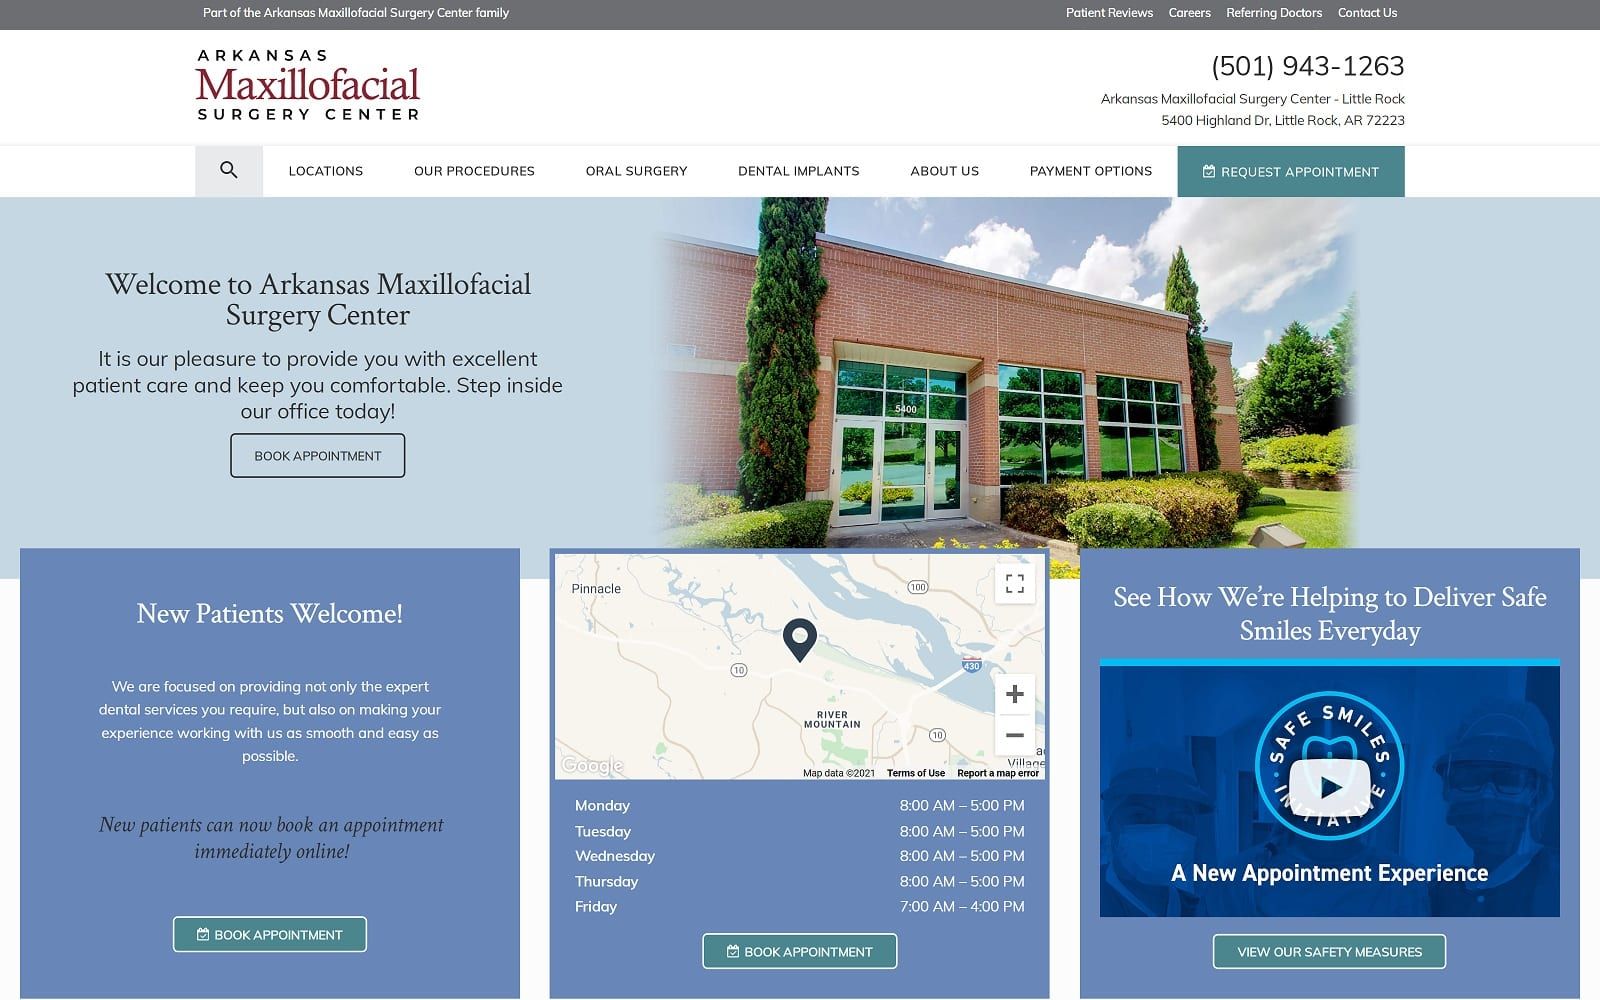 The Screenshot of Arkansas Maxillofacial Surgery Center - Little Rock arkansasmaxoralsurgery.com/locations/little-rock Website
